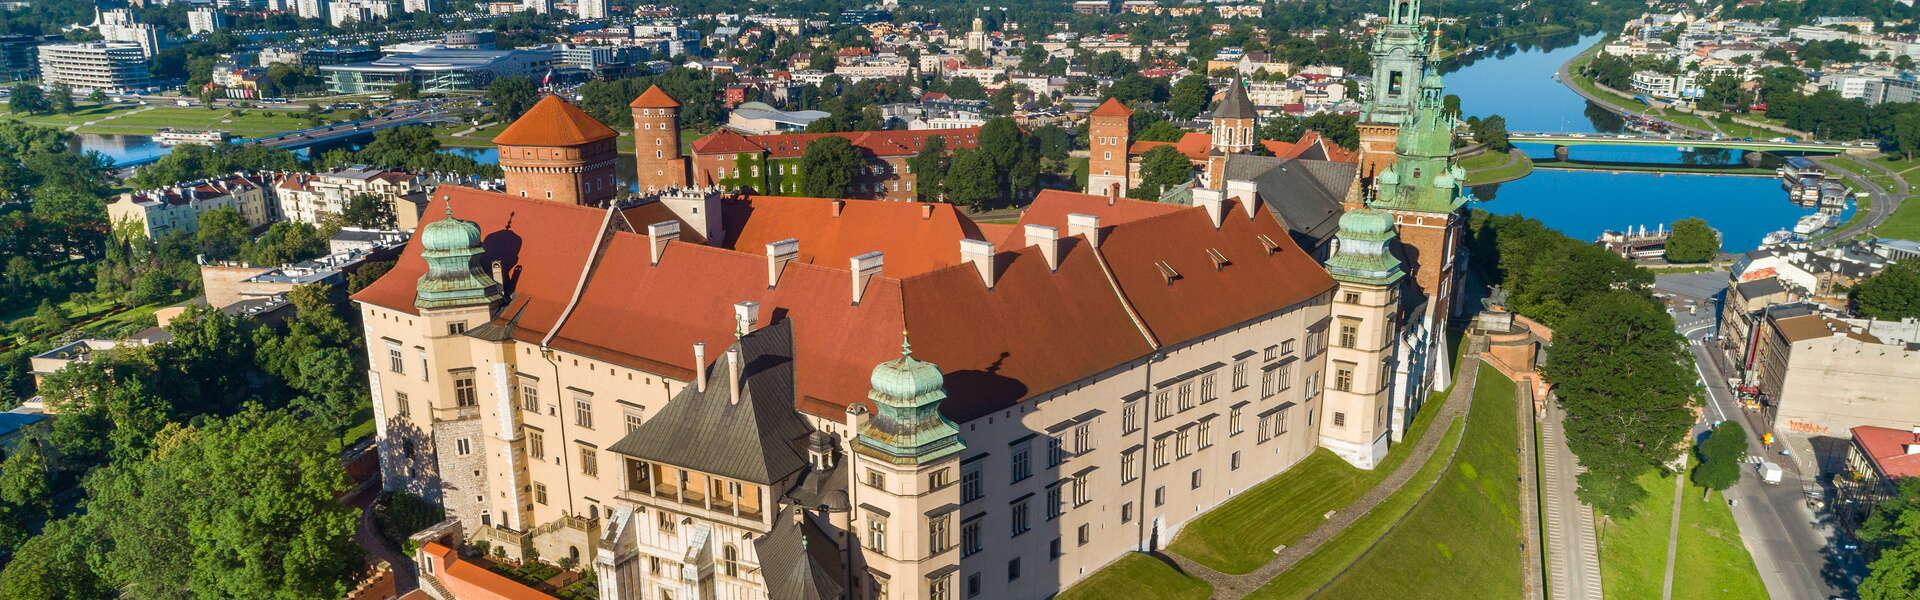 Krakau. Blick auf das Königsschloss auf dem Wawel